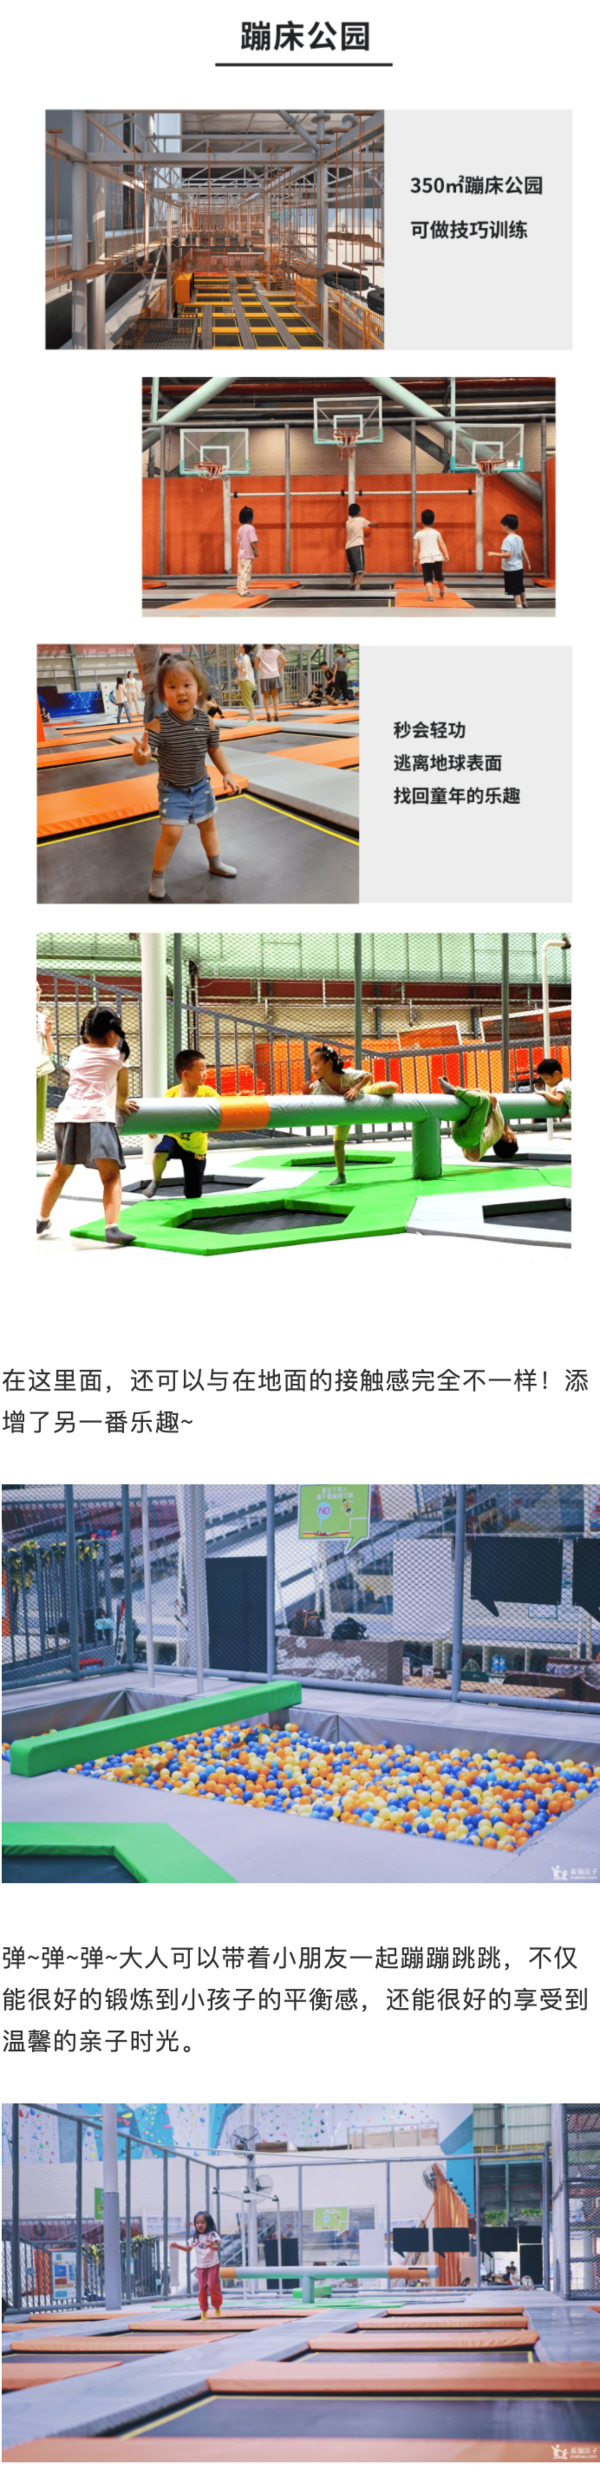 上海顽酷运动工厂高空矩阵/蹦床单项畅玩双人票